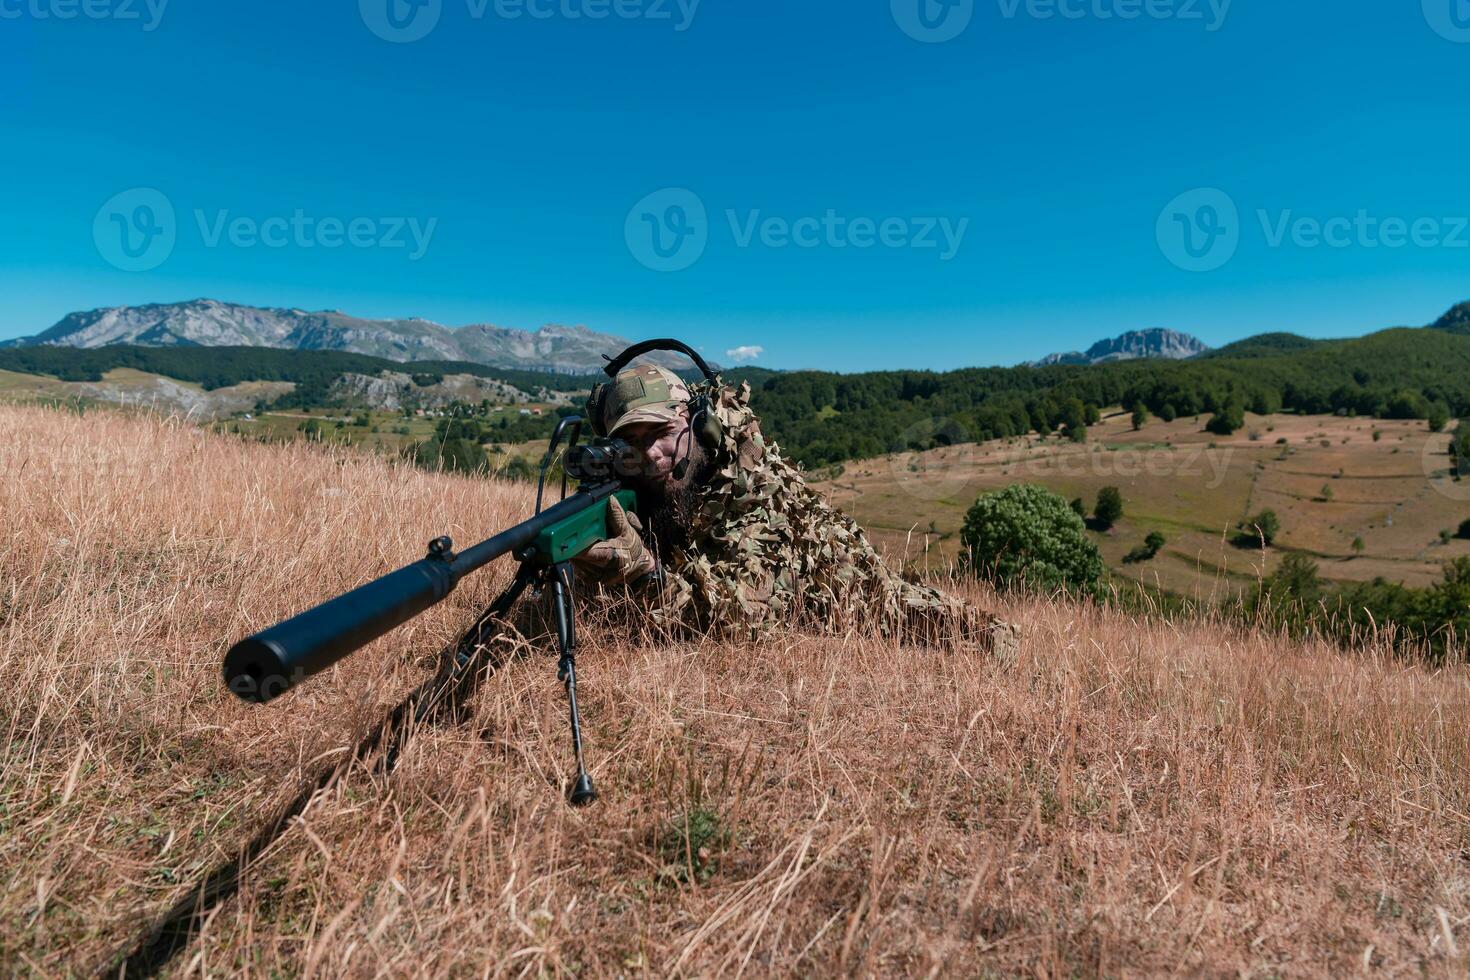 armén soldat innehav prickskytt gevär med omfattning och siktar i skog. krig, armé, teknologi och människor begrepp foto